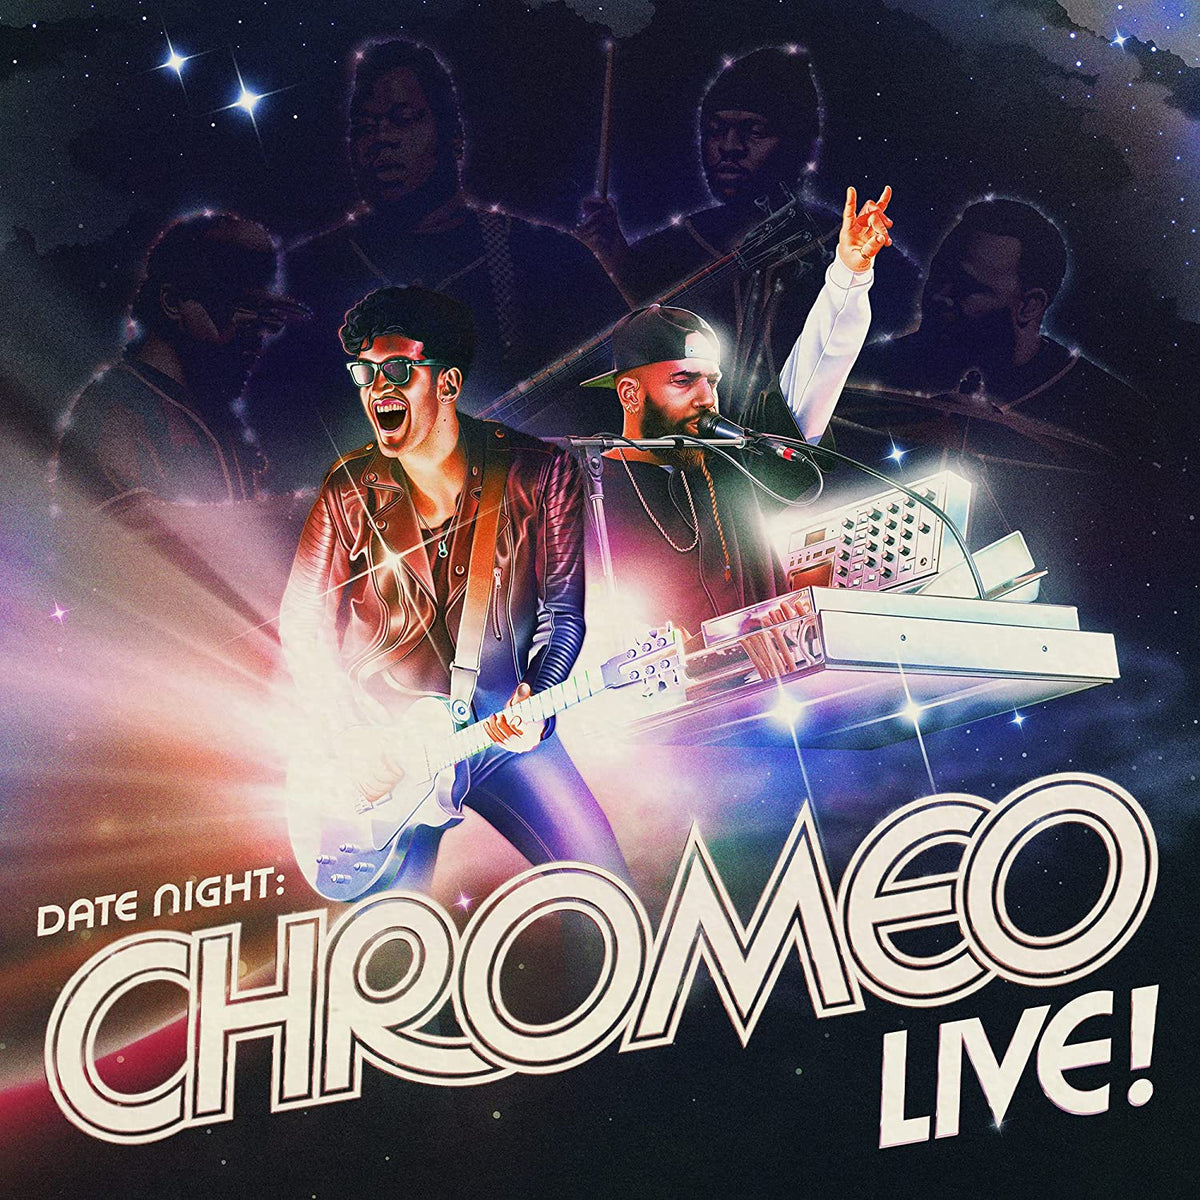 Chromeo – Date Night: Chromeo Live! (LP)